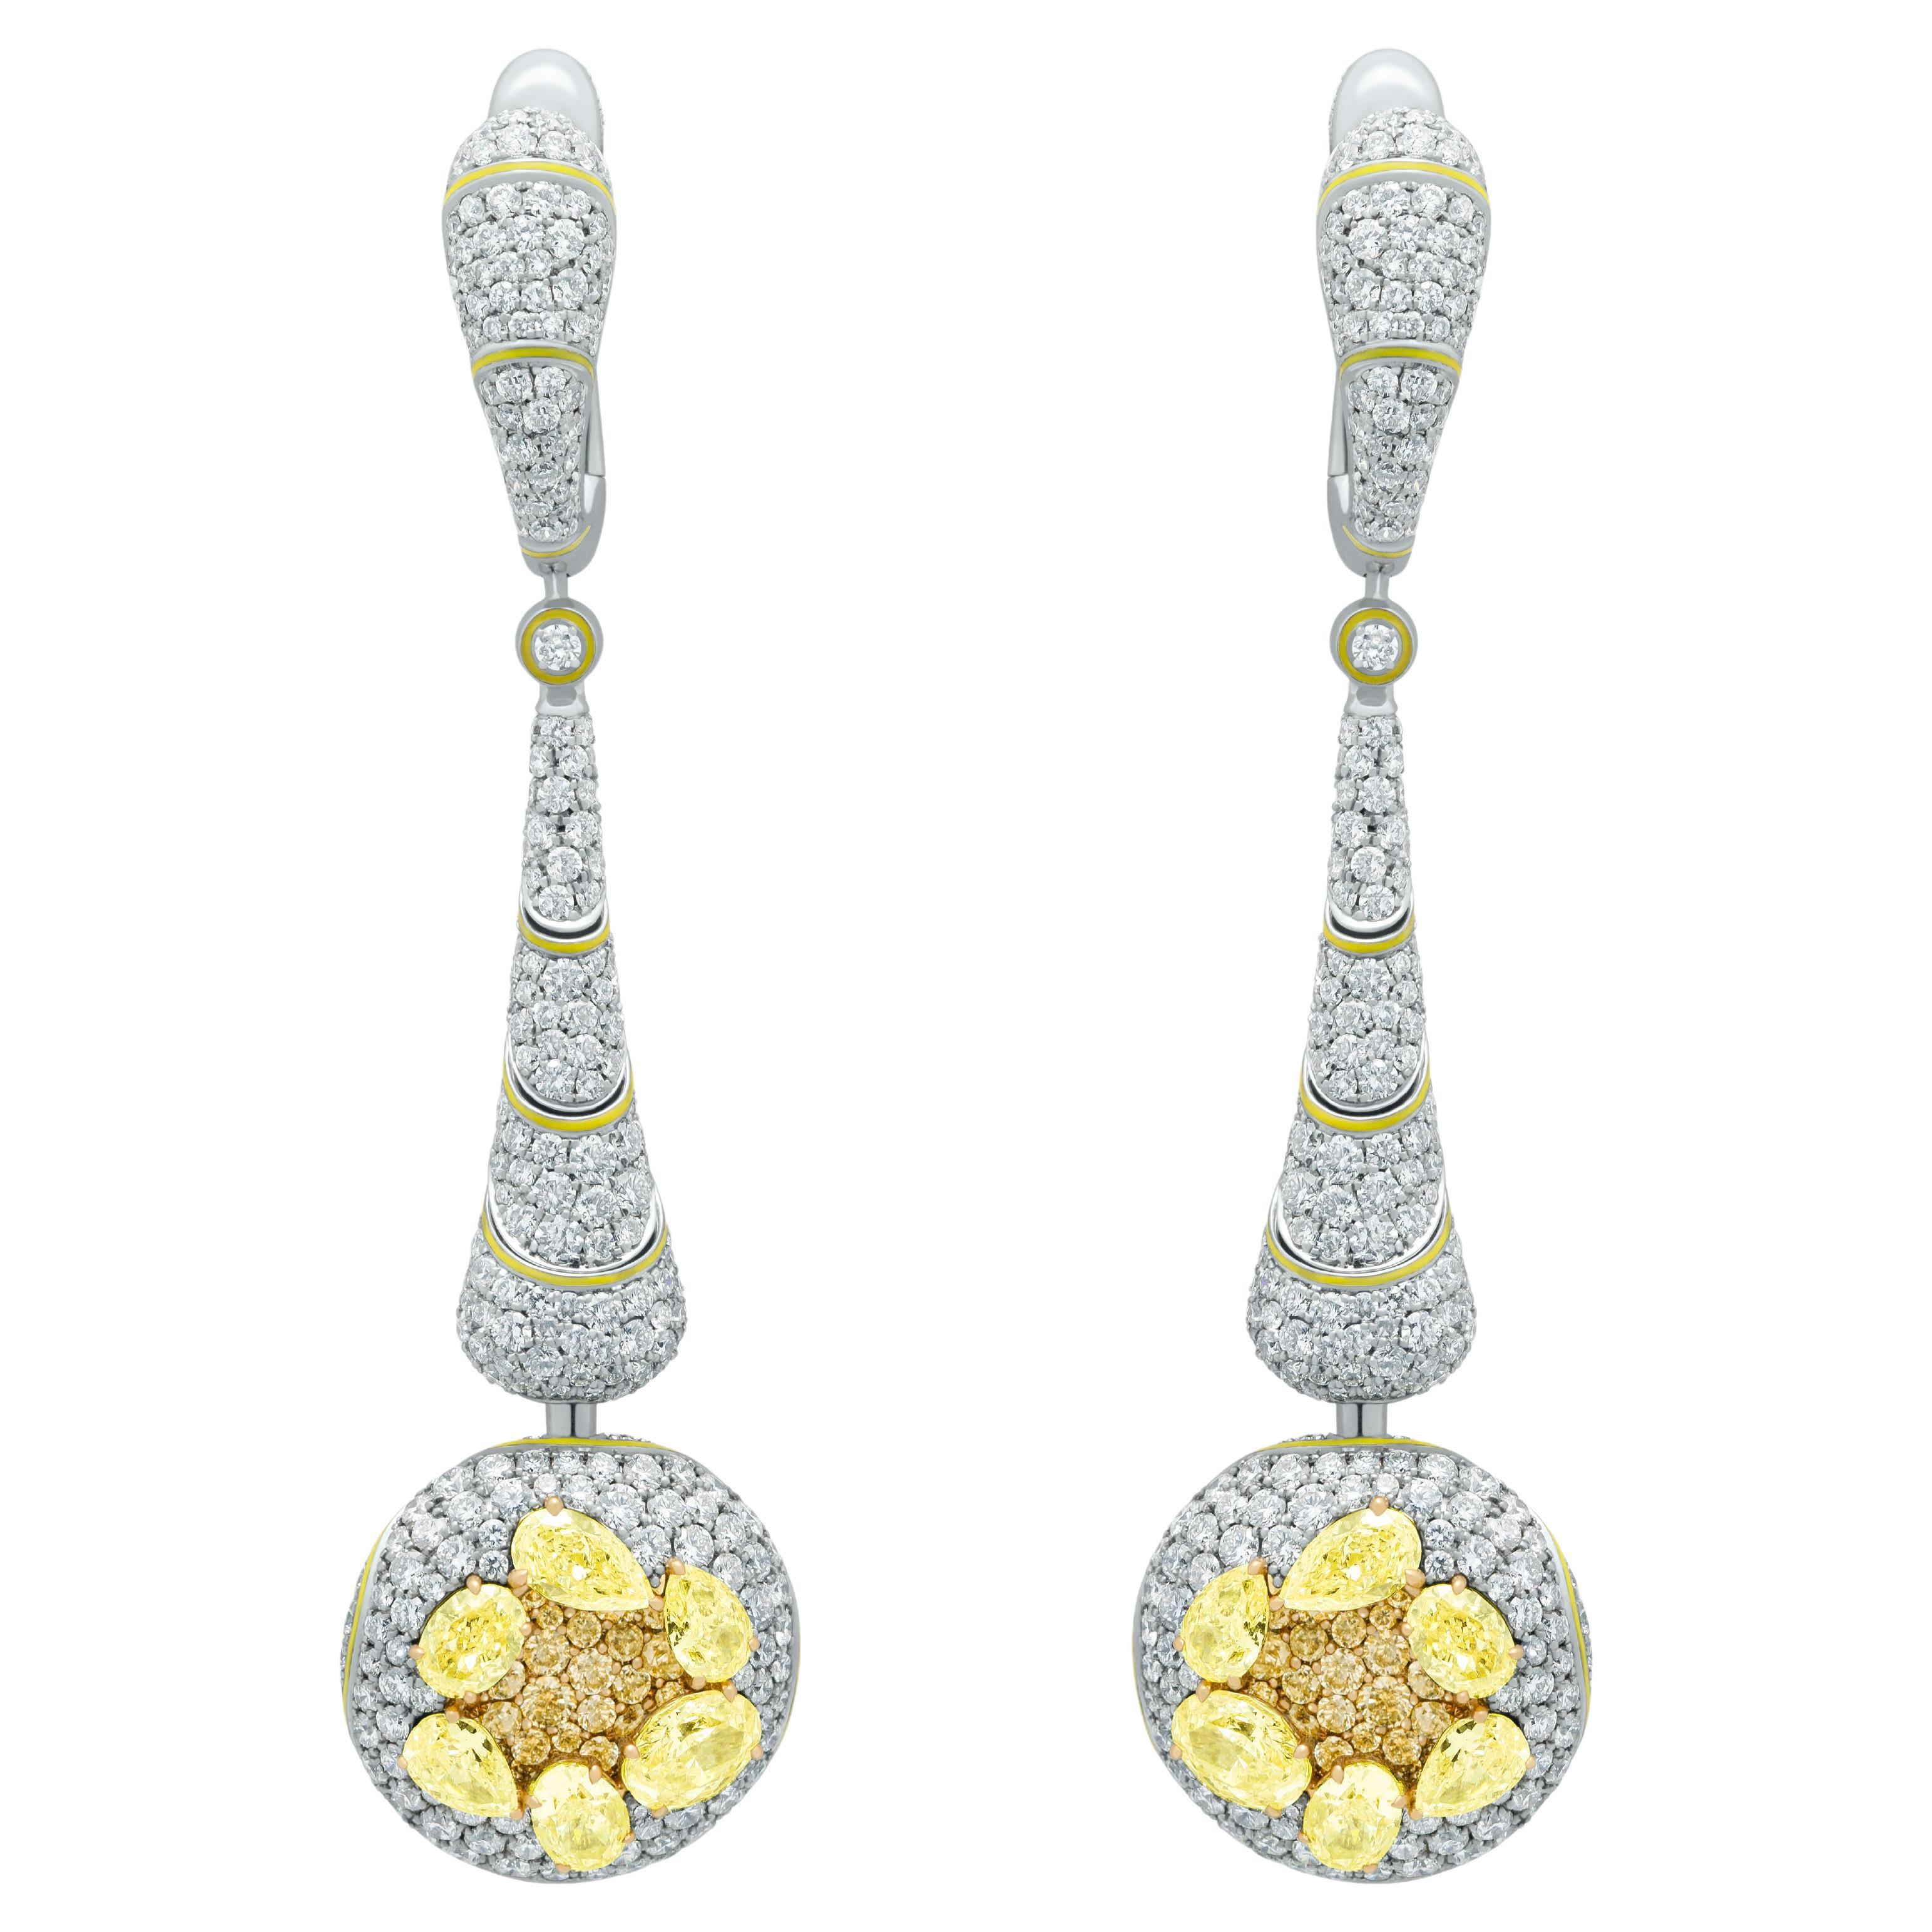 Gelbe Diamanten, weiße Diamanten, Emaille, 18 Karat Weißgold, Ohrringe mit hohem Schmuck